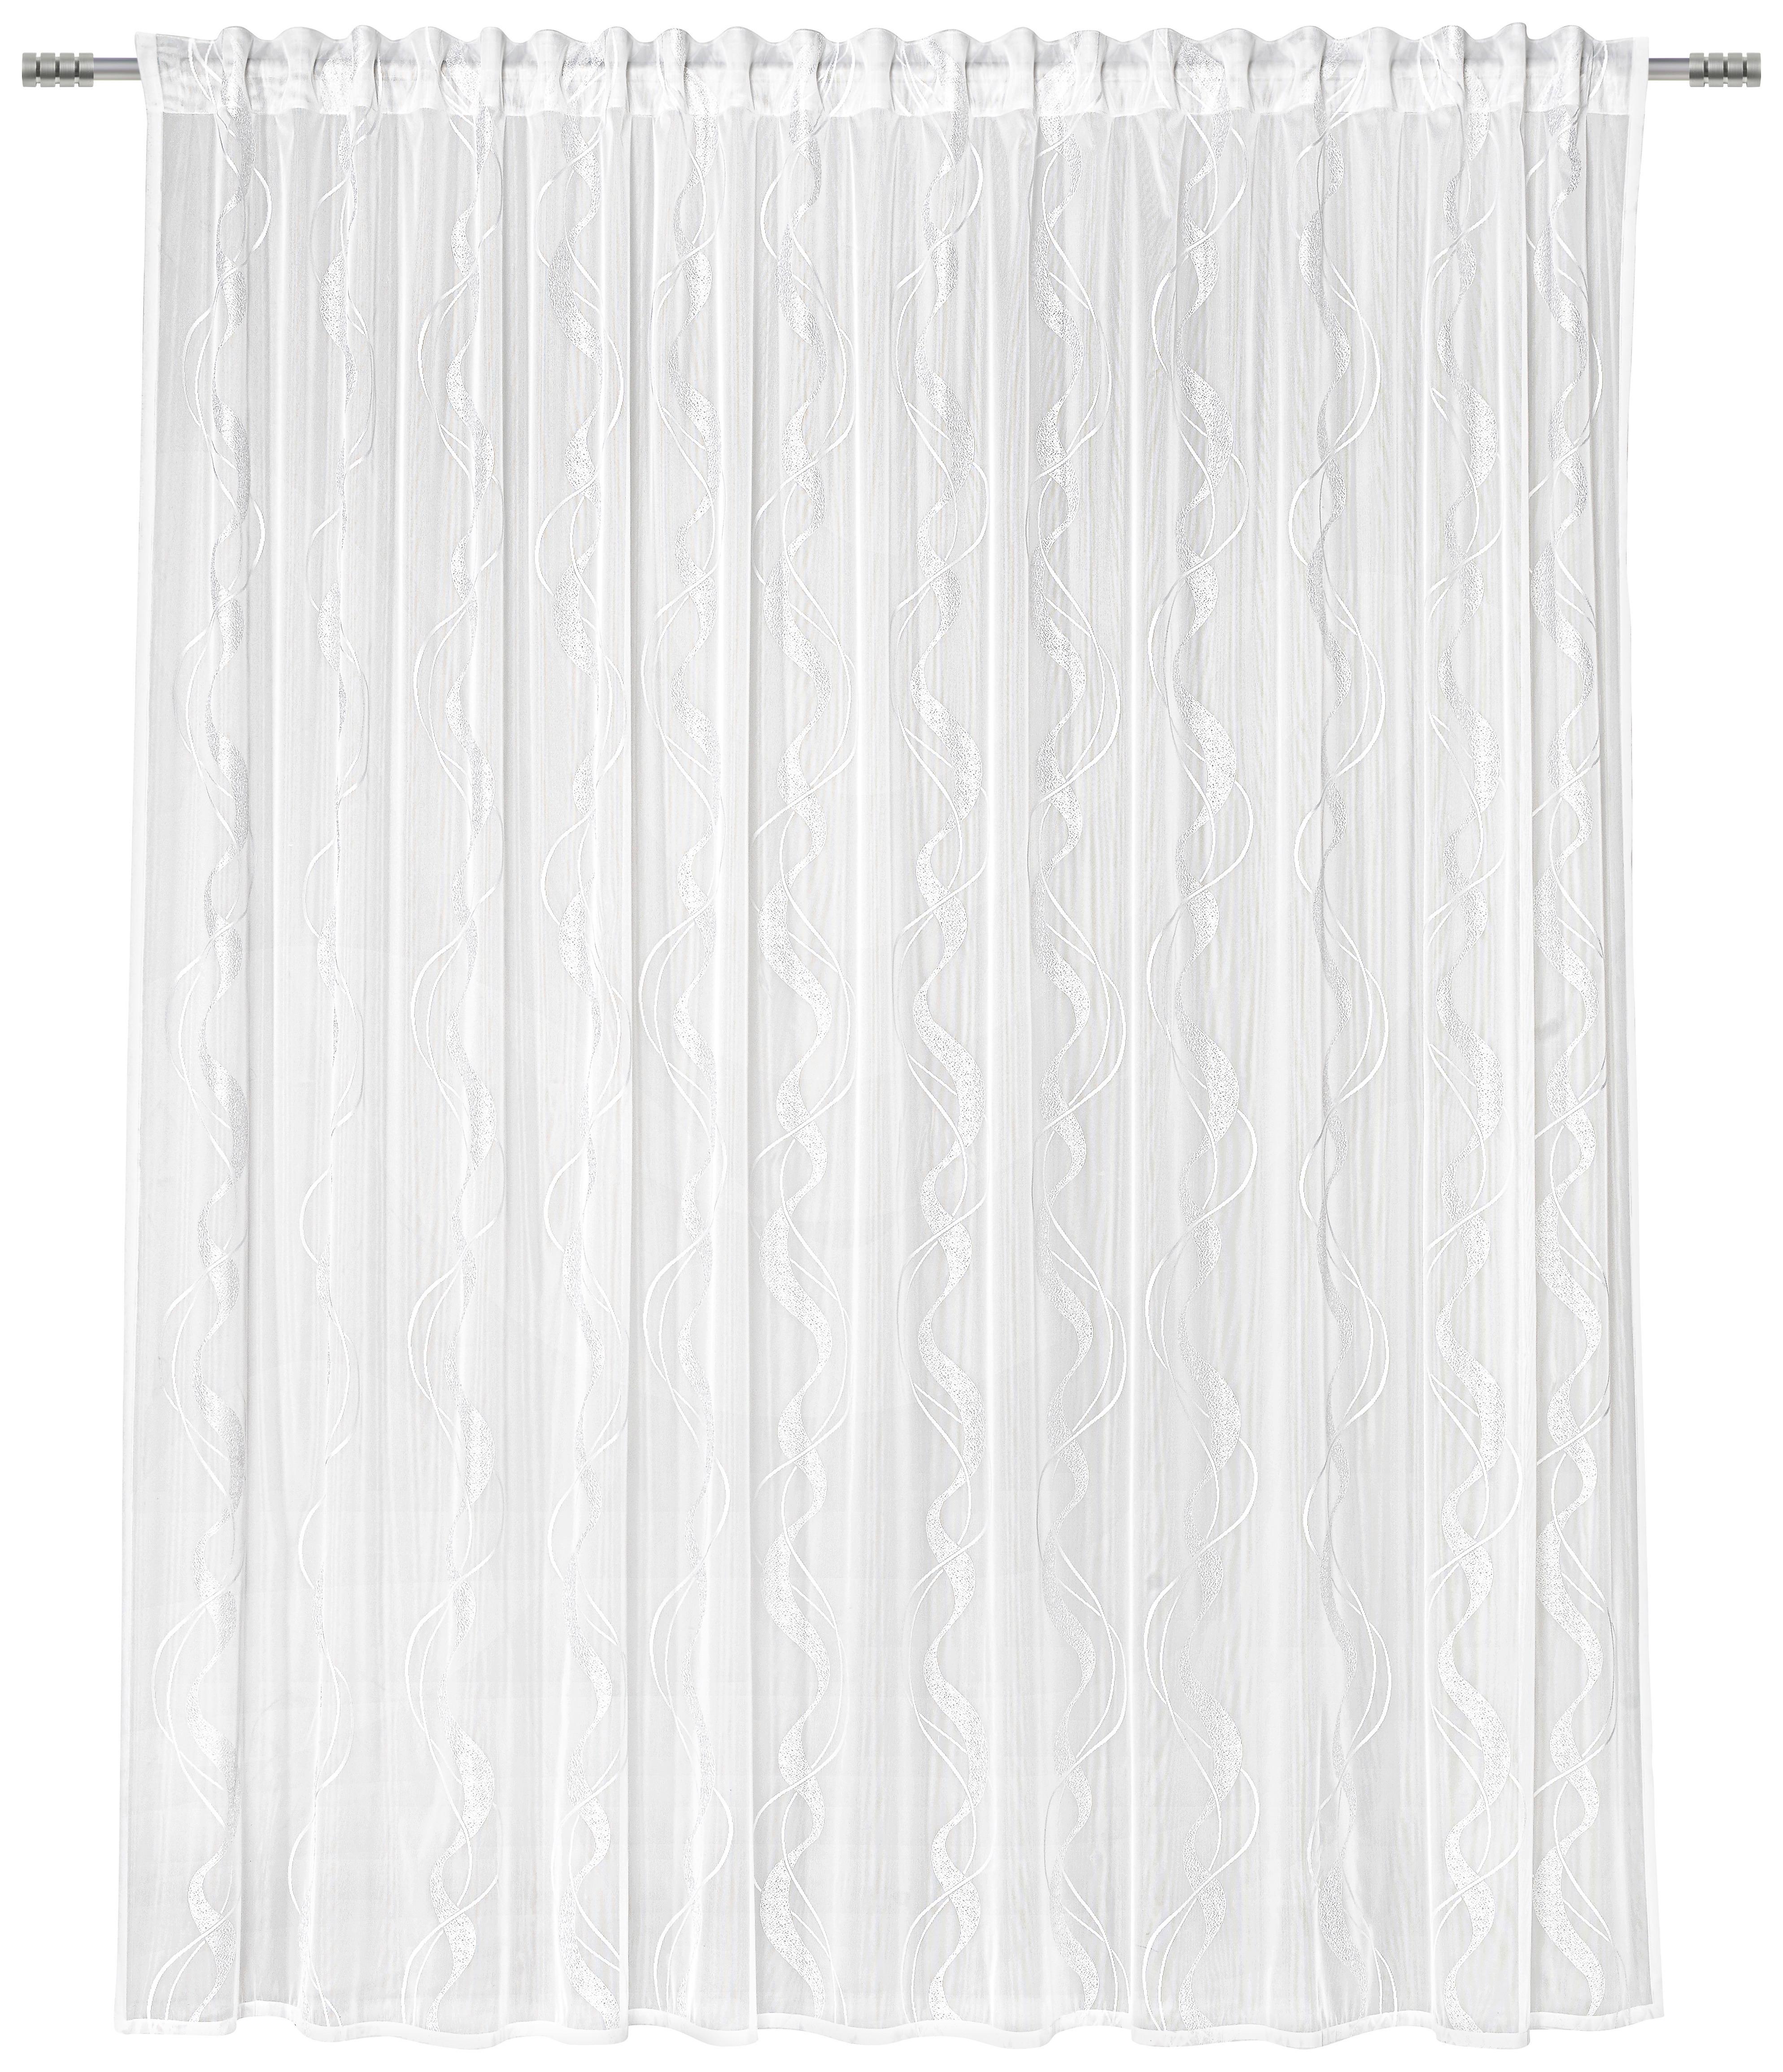 Készfüggöny Wave Store 300/245 - Fehér, Textil (300/245cm) - Modern Living